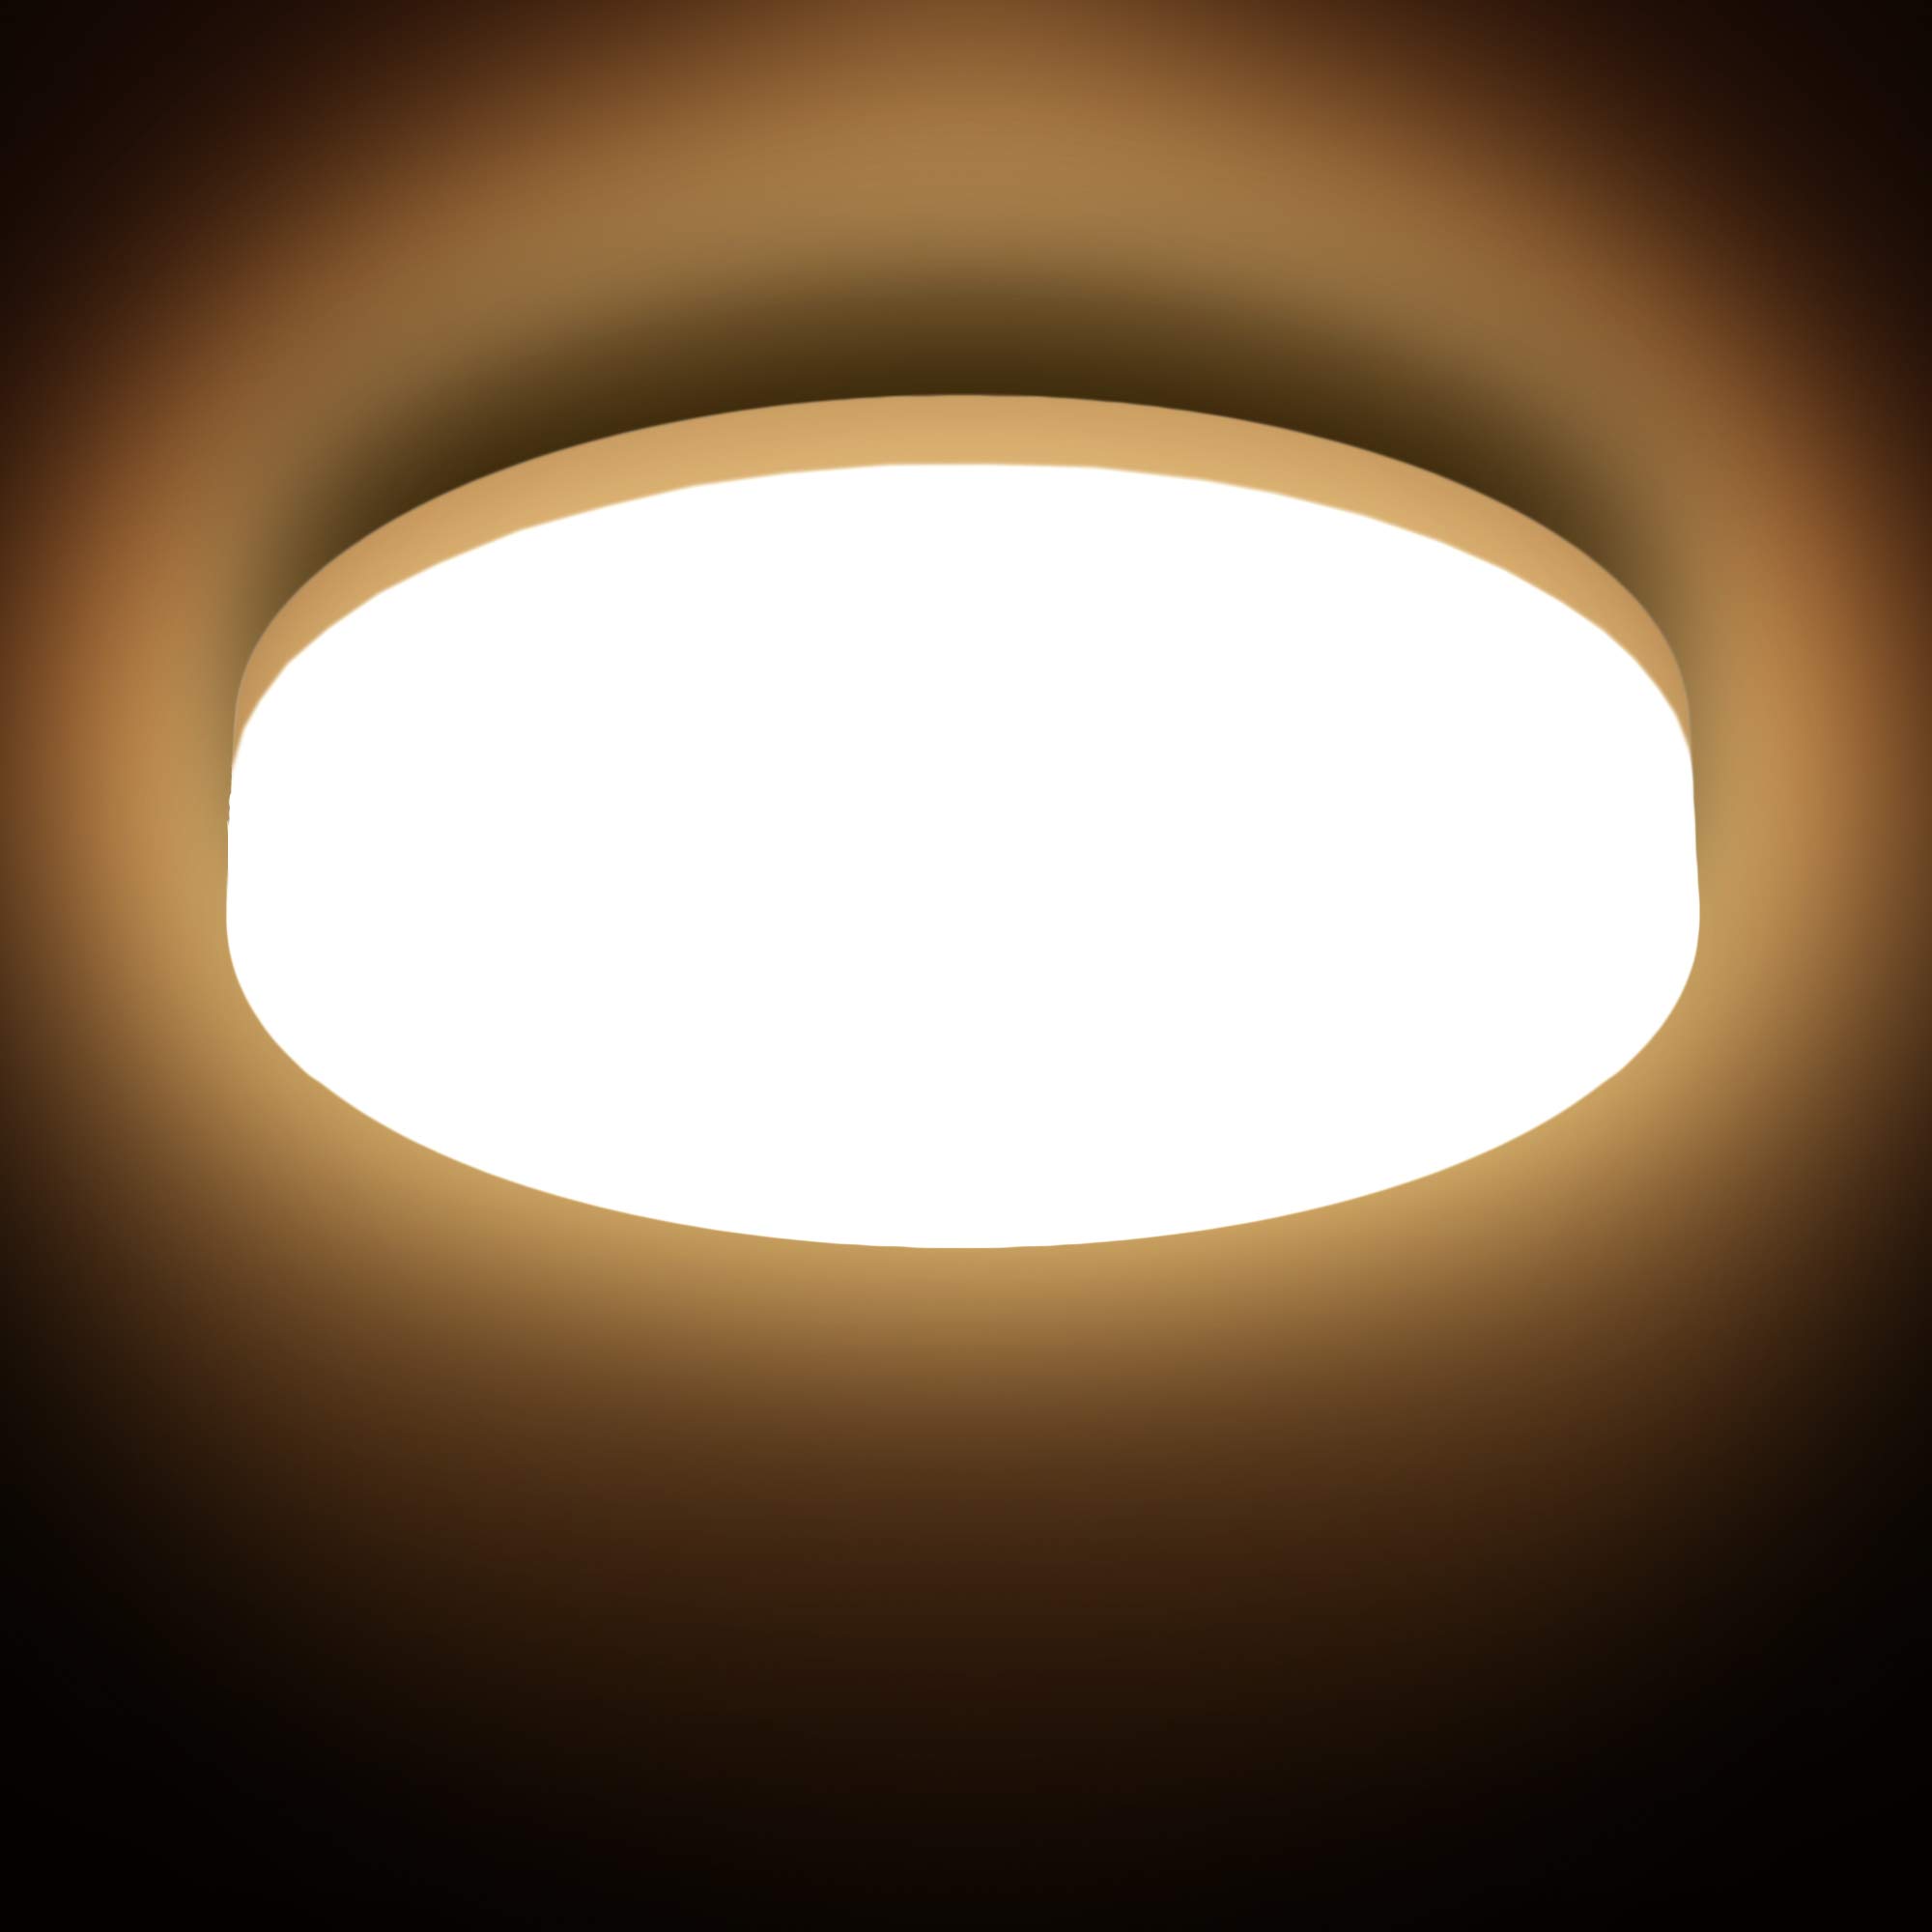 B.K.Licht - Deckenlampe für das Bad mit warmweißer Lichtfarbe, IP54, 13 Watt, 1500 Lumen, LED Deckenleuchte, LED Lampe, Badlampe, Badezimmerlampe, Küchenlampe, Feuchtraumleuchte, 22x5,4 cm, Weiß